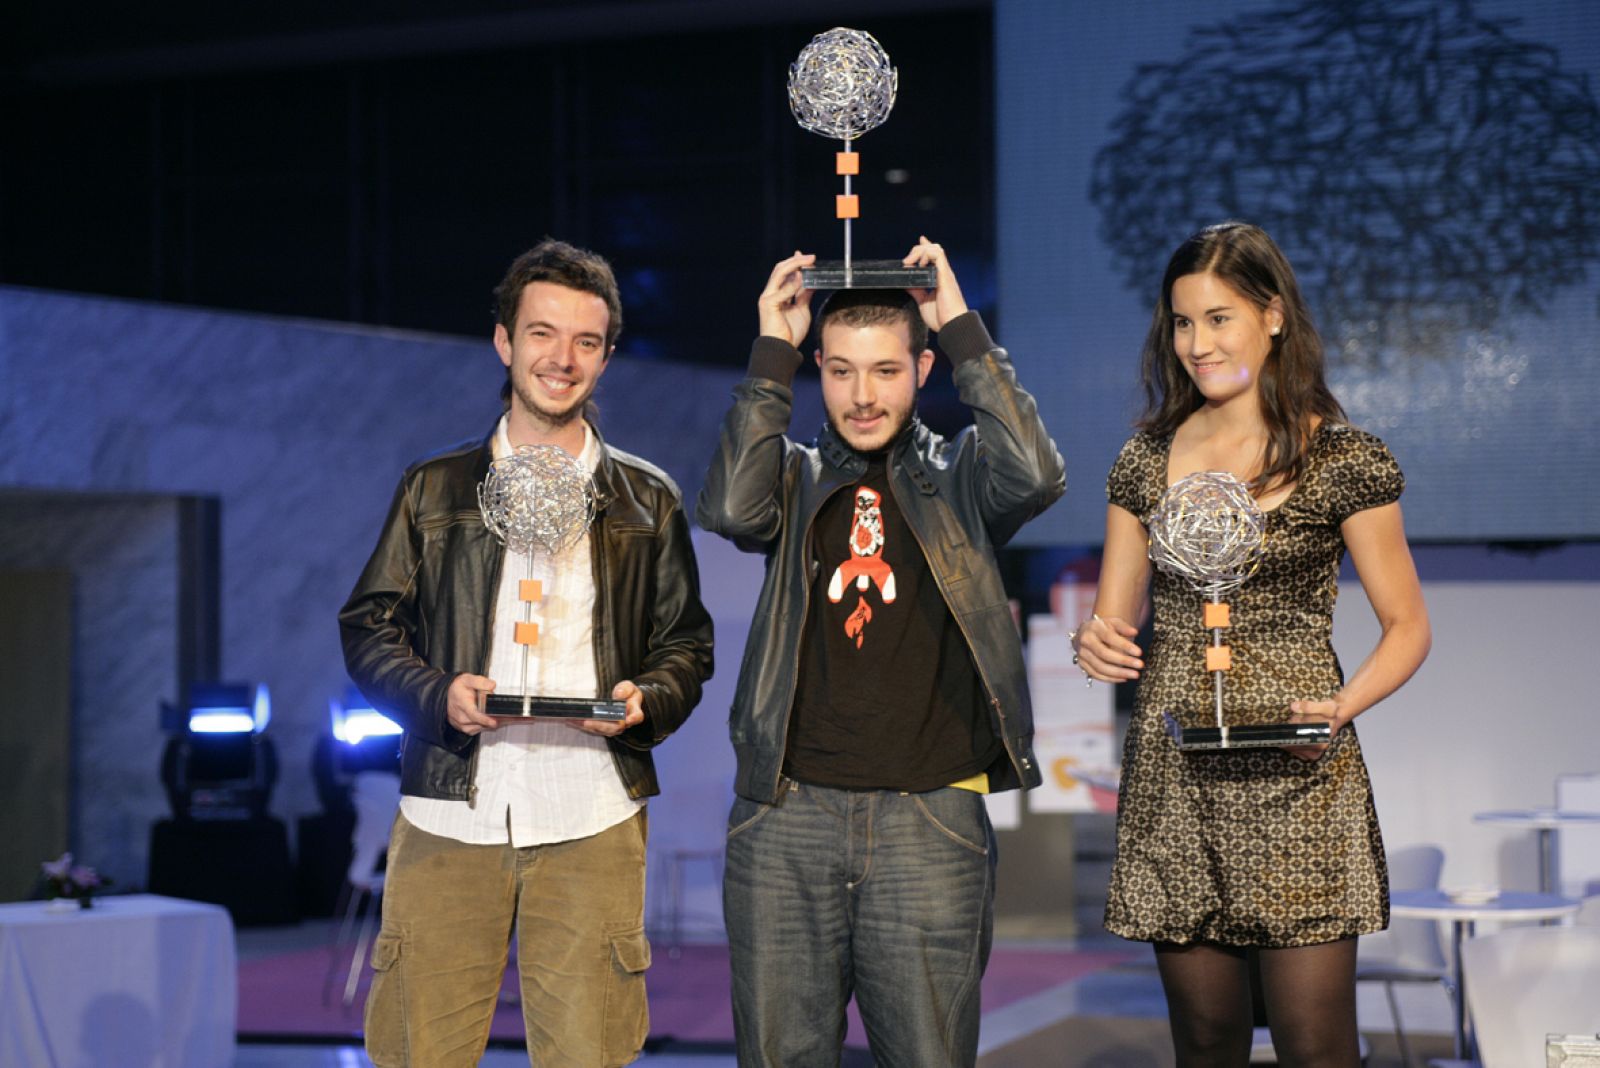 De izquierda a derecha, José Abelllán (7 Hipopótamos), Nicolás Alcalá (El Cosmonauta) y Carmila (que recogió el premio otorgado a For less or free en nombre de Aldo Murillo), los galardonados en la primera edición de los premios INVI.